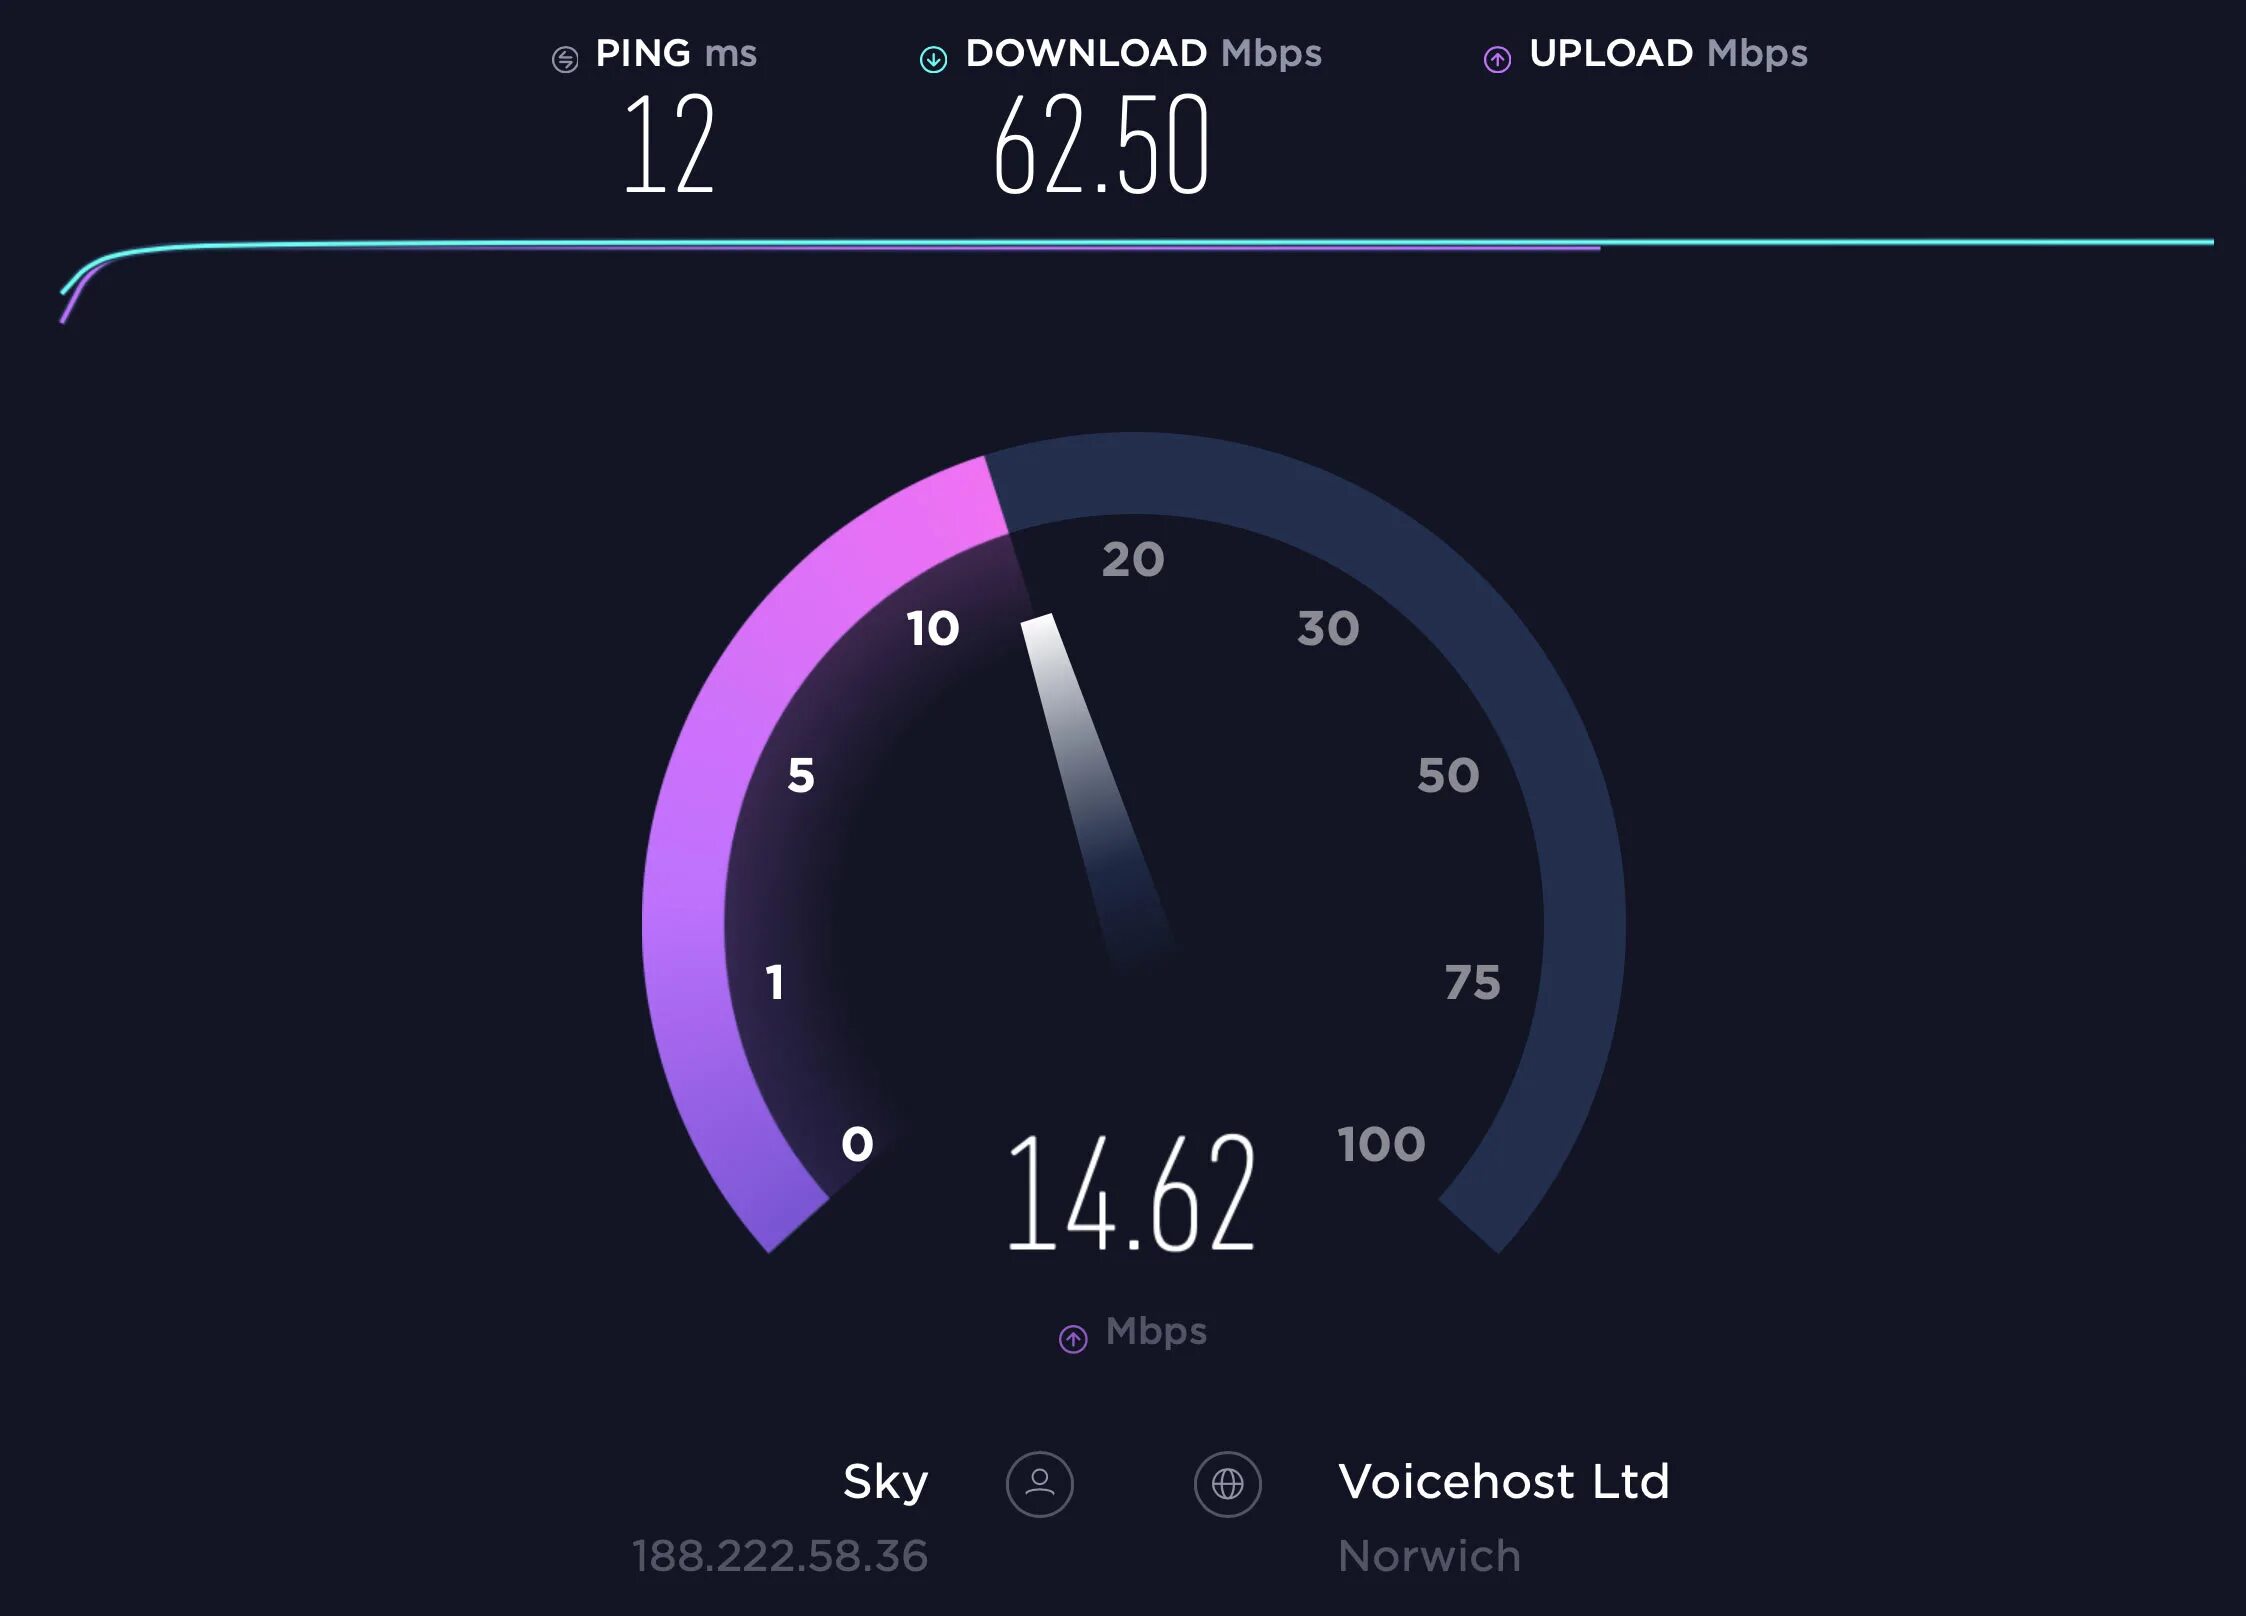 Спидтест. Скорость интернета. Speedtest Скриншот. Тест скорости интернета.